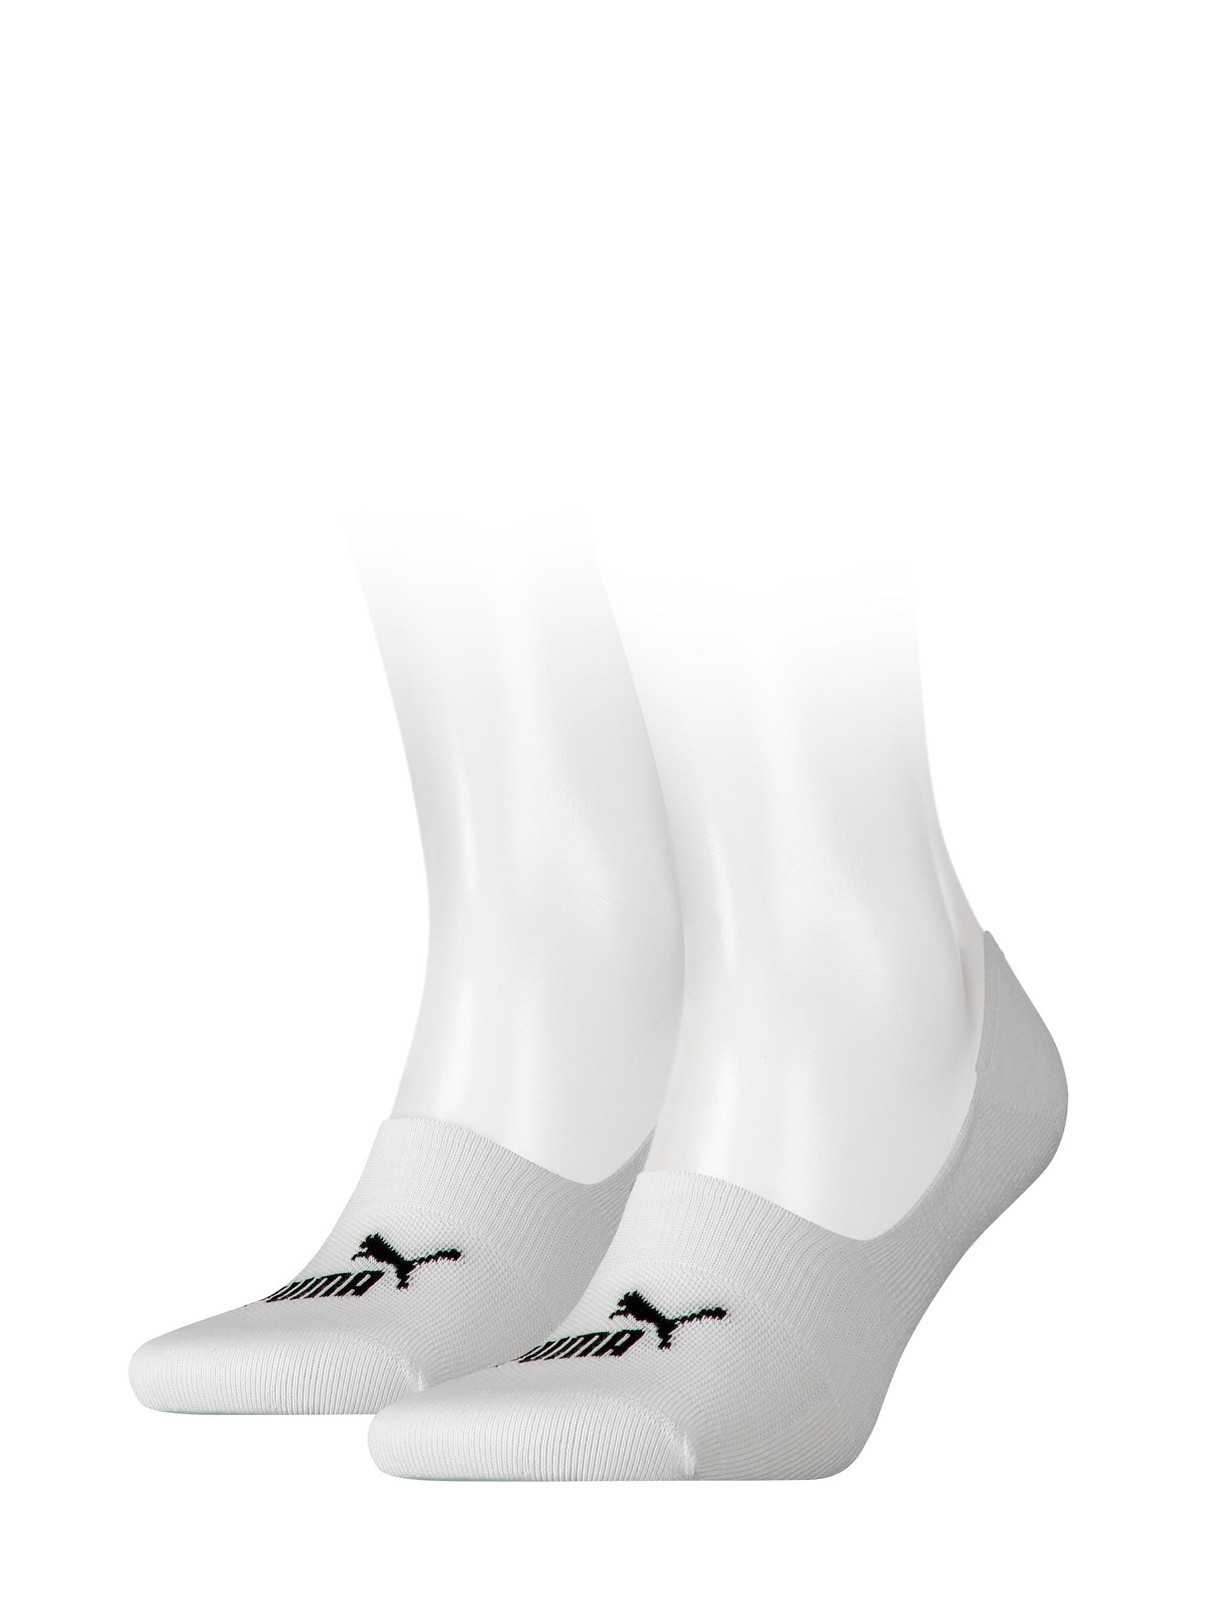 Unisex ponožky baleríny 907982 Soft Footie A'2 bílé - Puma 43-46